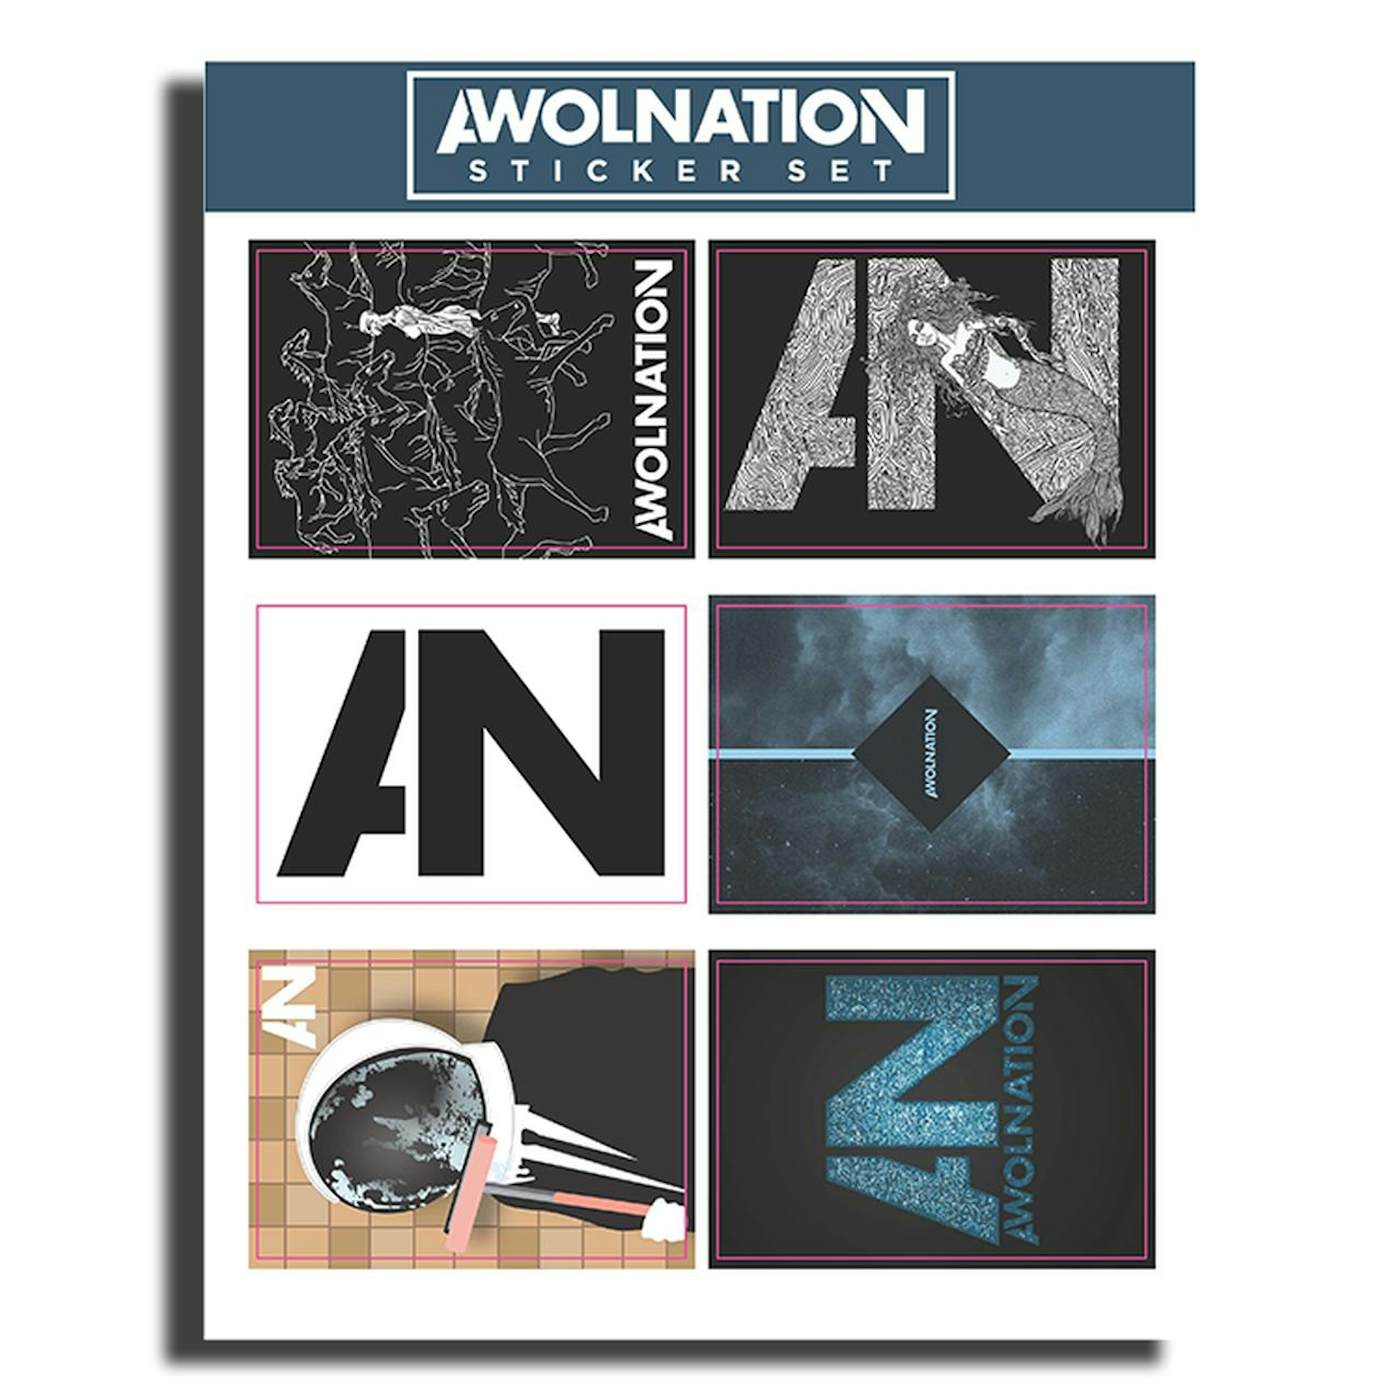 Awolnation Sticker Sheet